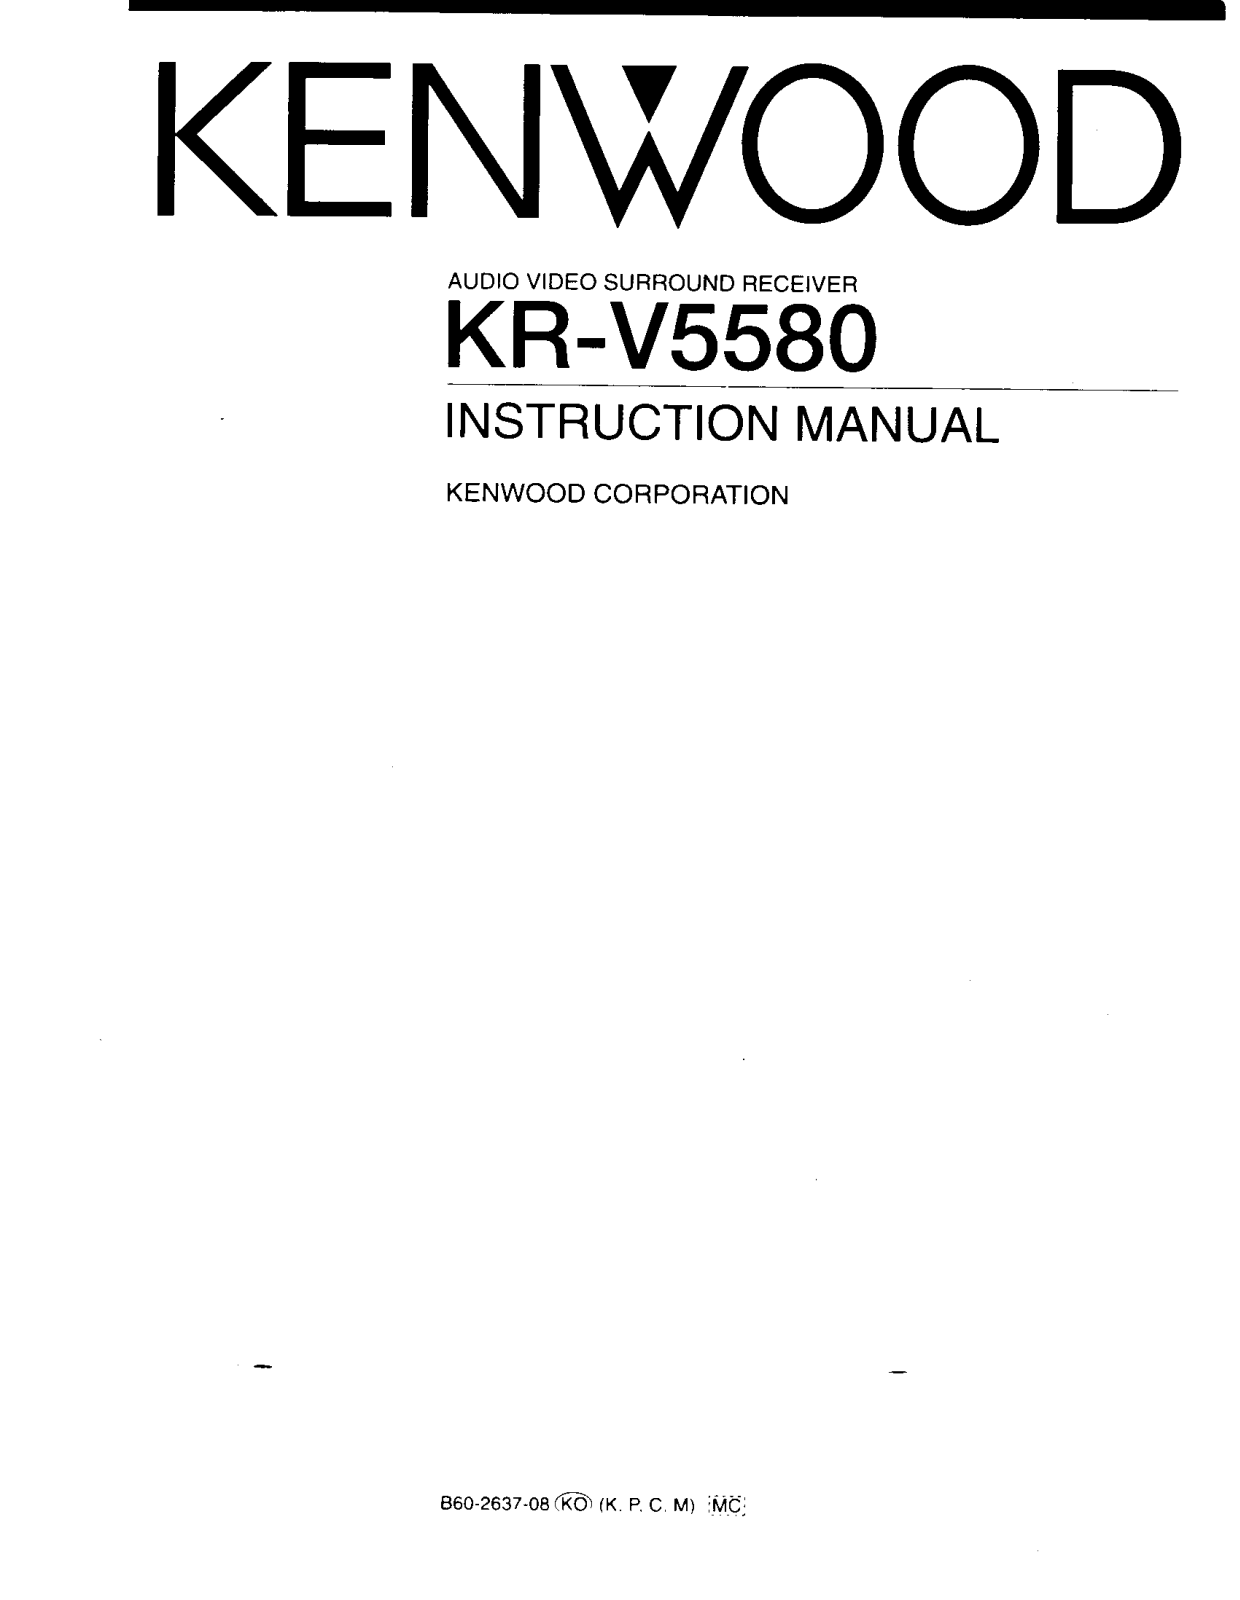 Kenwood KR-V5580 Owner's Manual